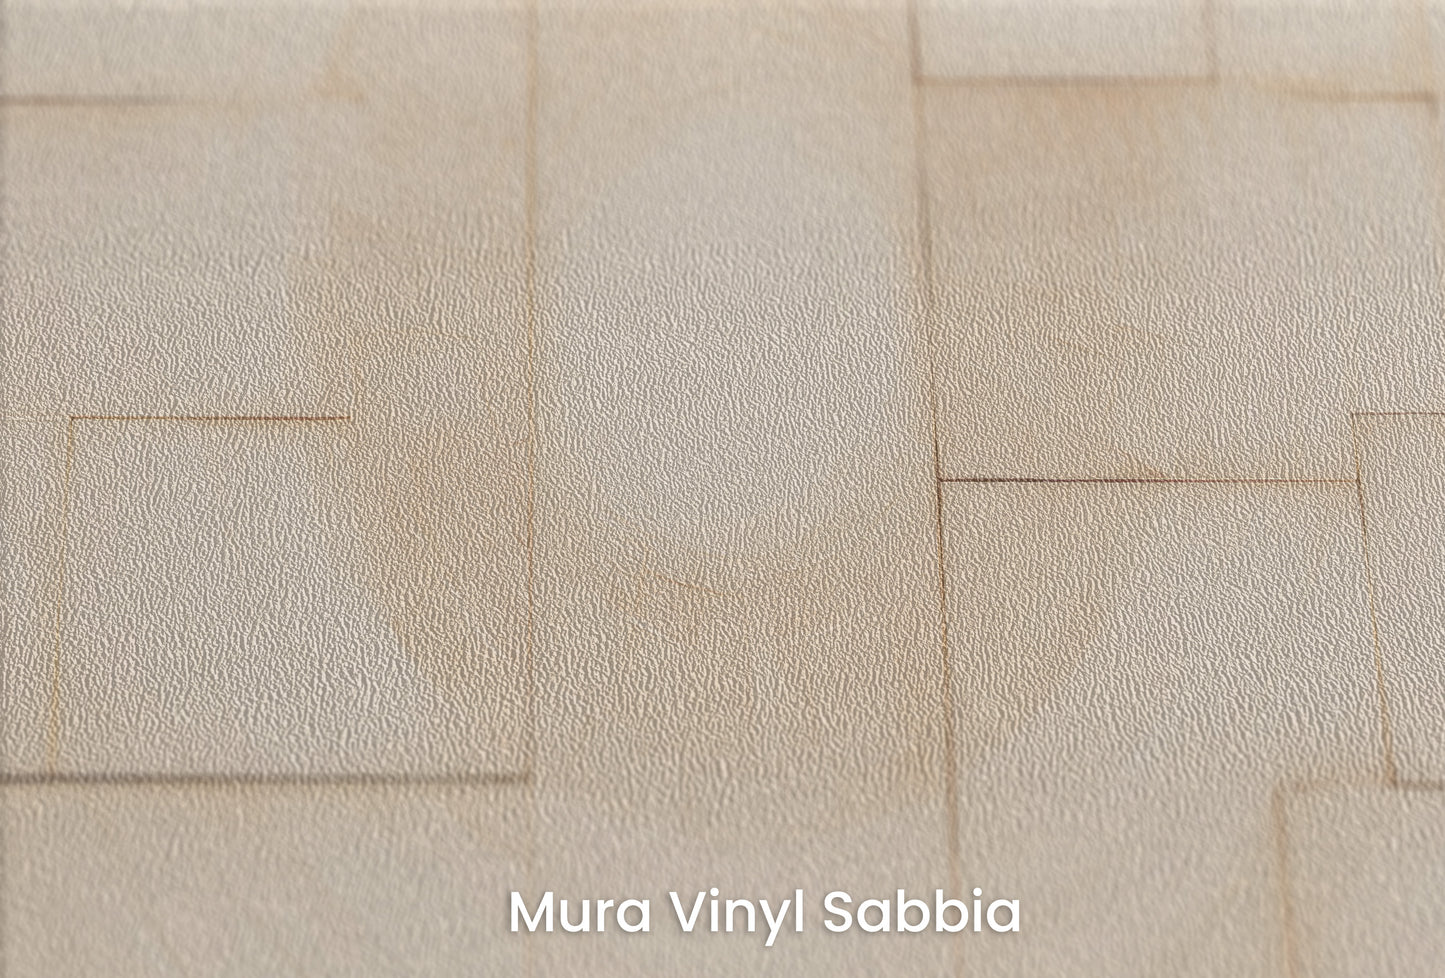 Zbliżenie na artystyczną fototapetę o nazwie WOODEN PATCHWORK SOLARIS na podłożu Mura Vinyl Sabbia struktura grubego ziarna piasku.